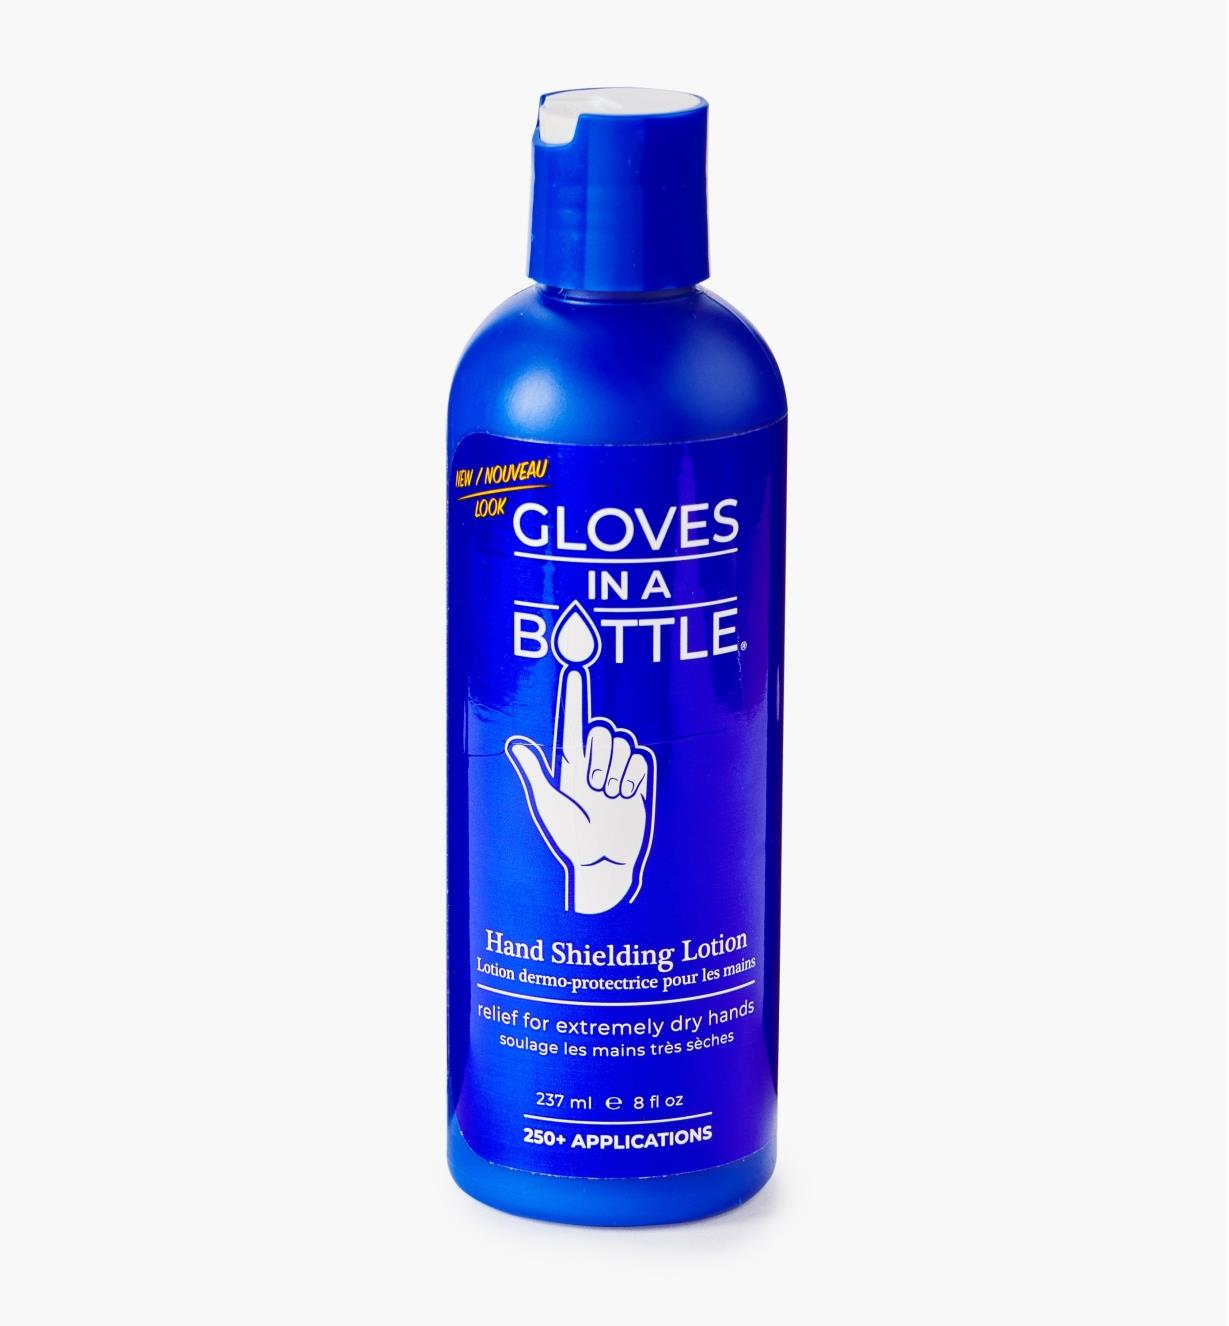 25K9022 - Gloves in a Bottle, 237ml (8 fl oz)